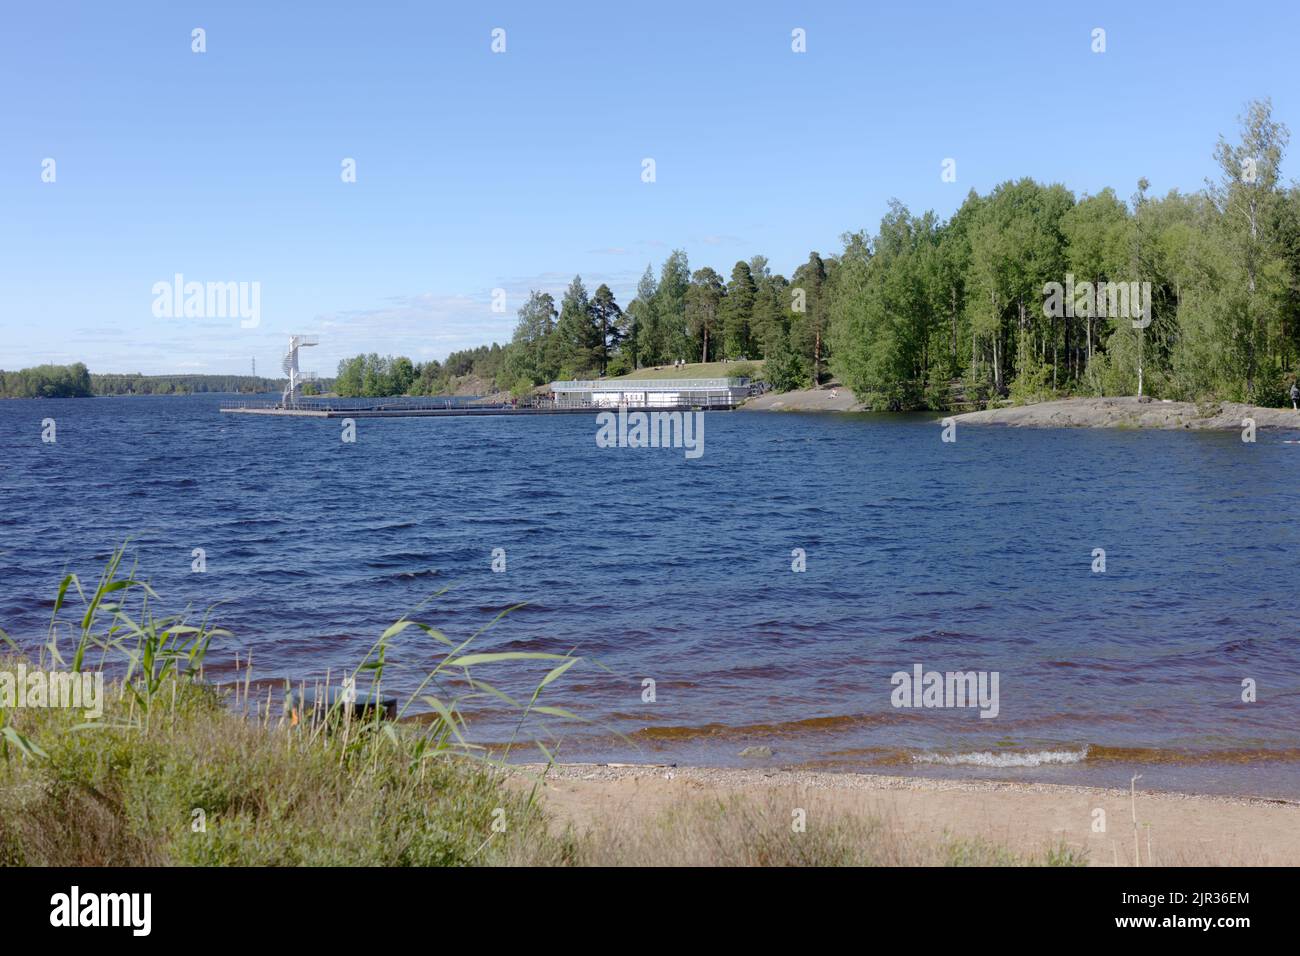 Piscine avec tour de plongée dans le lac Saimaa au parc familial Myllysaari à Lappeenranta, Finlande Banque D'Images